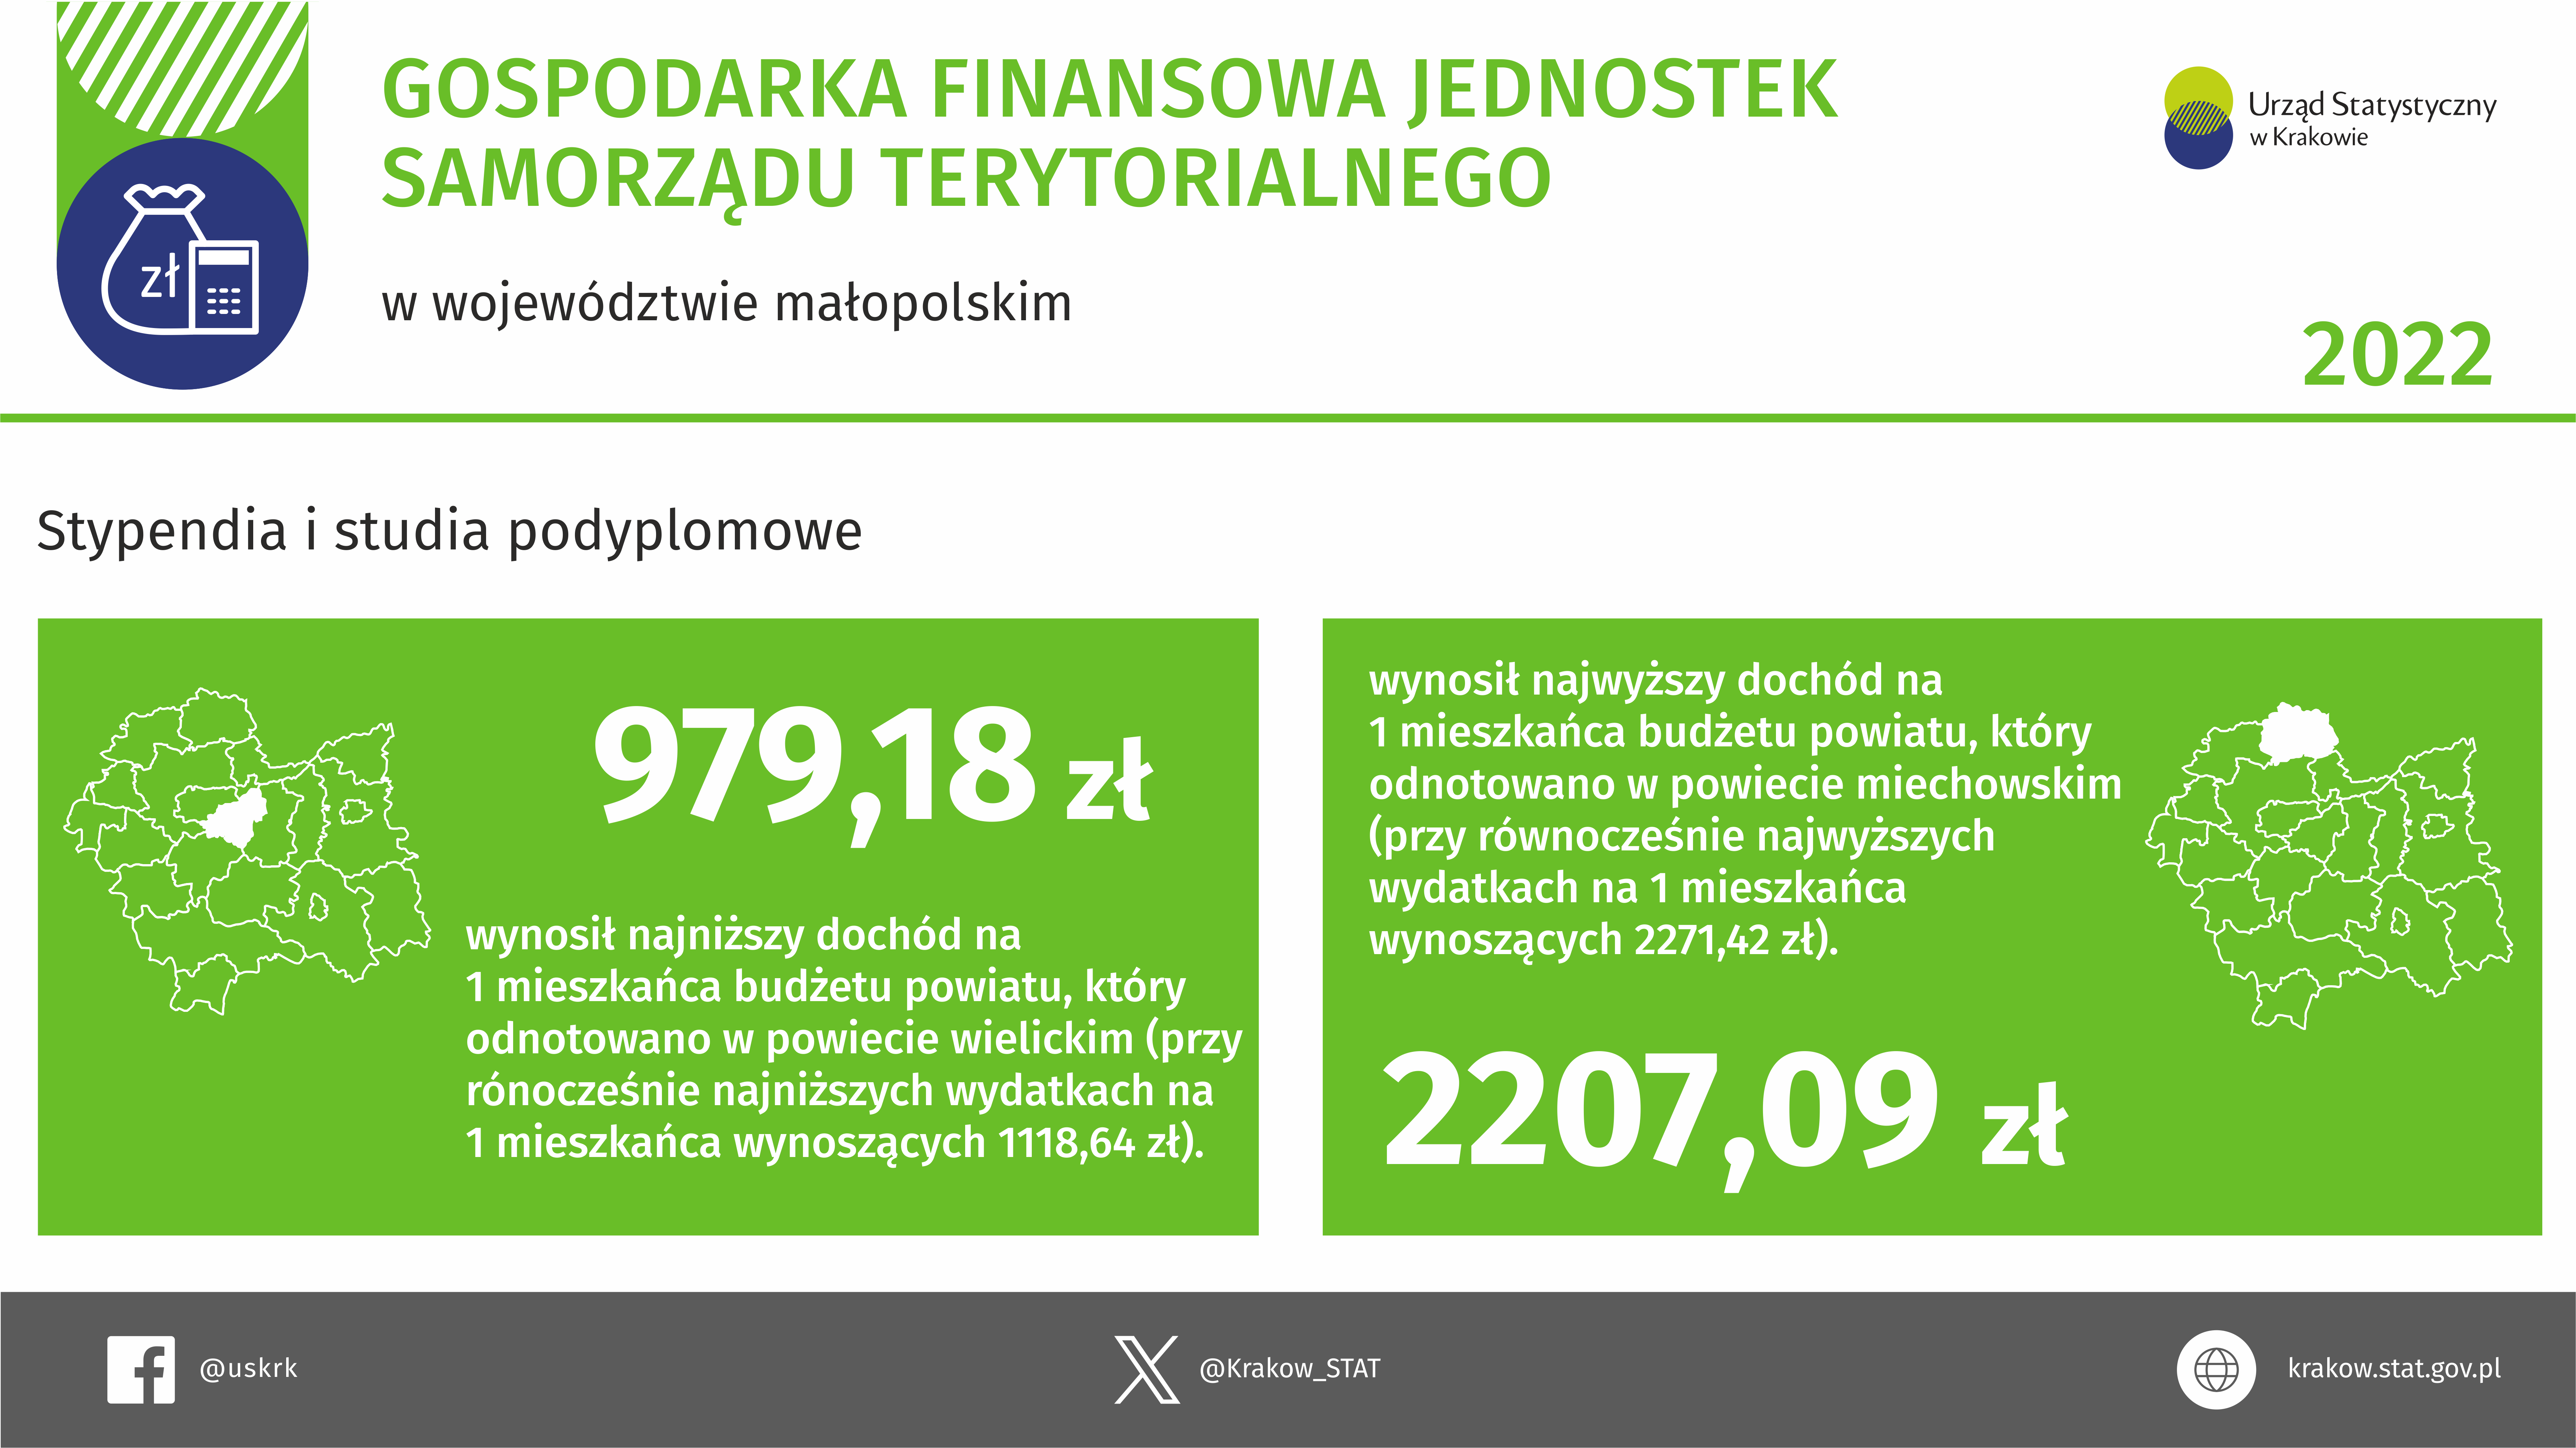 Gospodarka finansowa jednostek samorządu terytorialnego w województwie małopolskim w 2022 r.